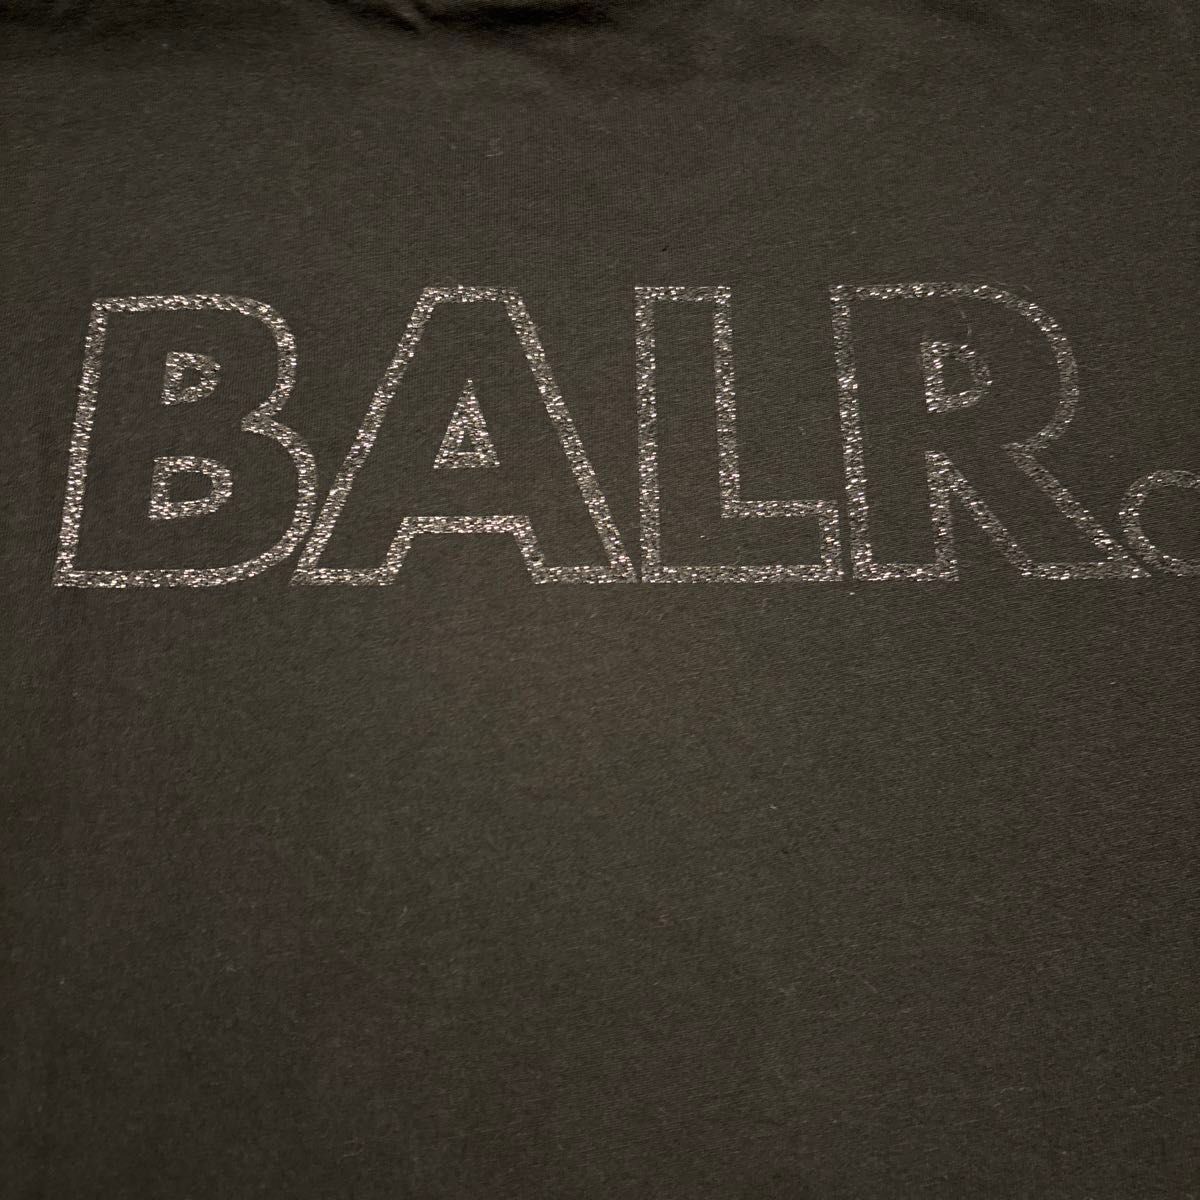 BALR. / ボーラー/ Tシャツ / Lサイズ　黒